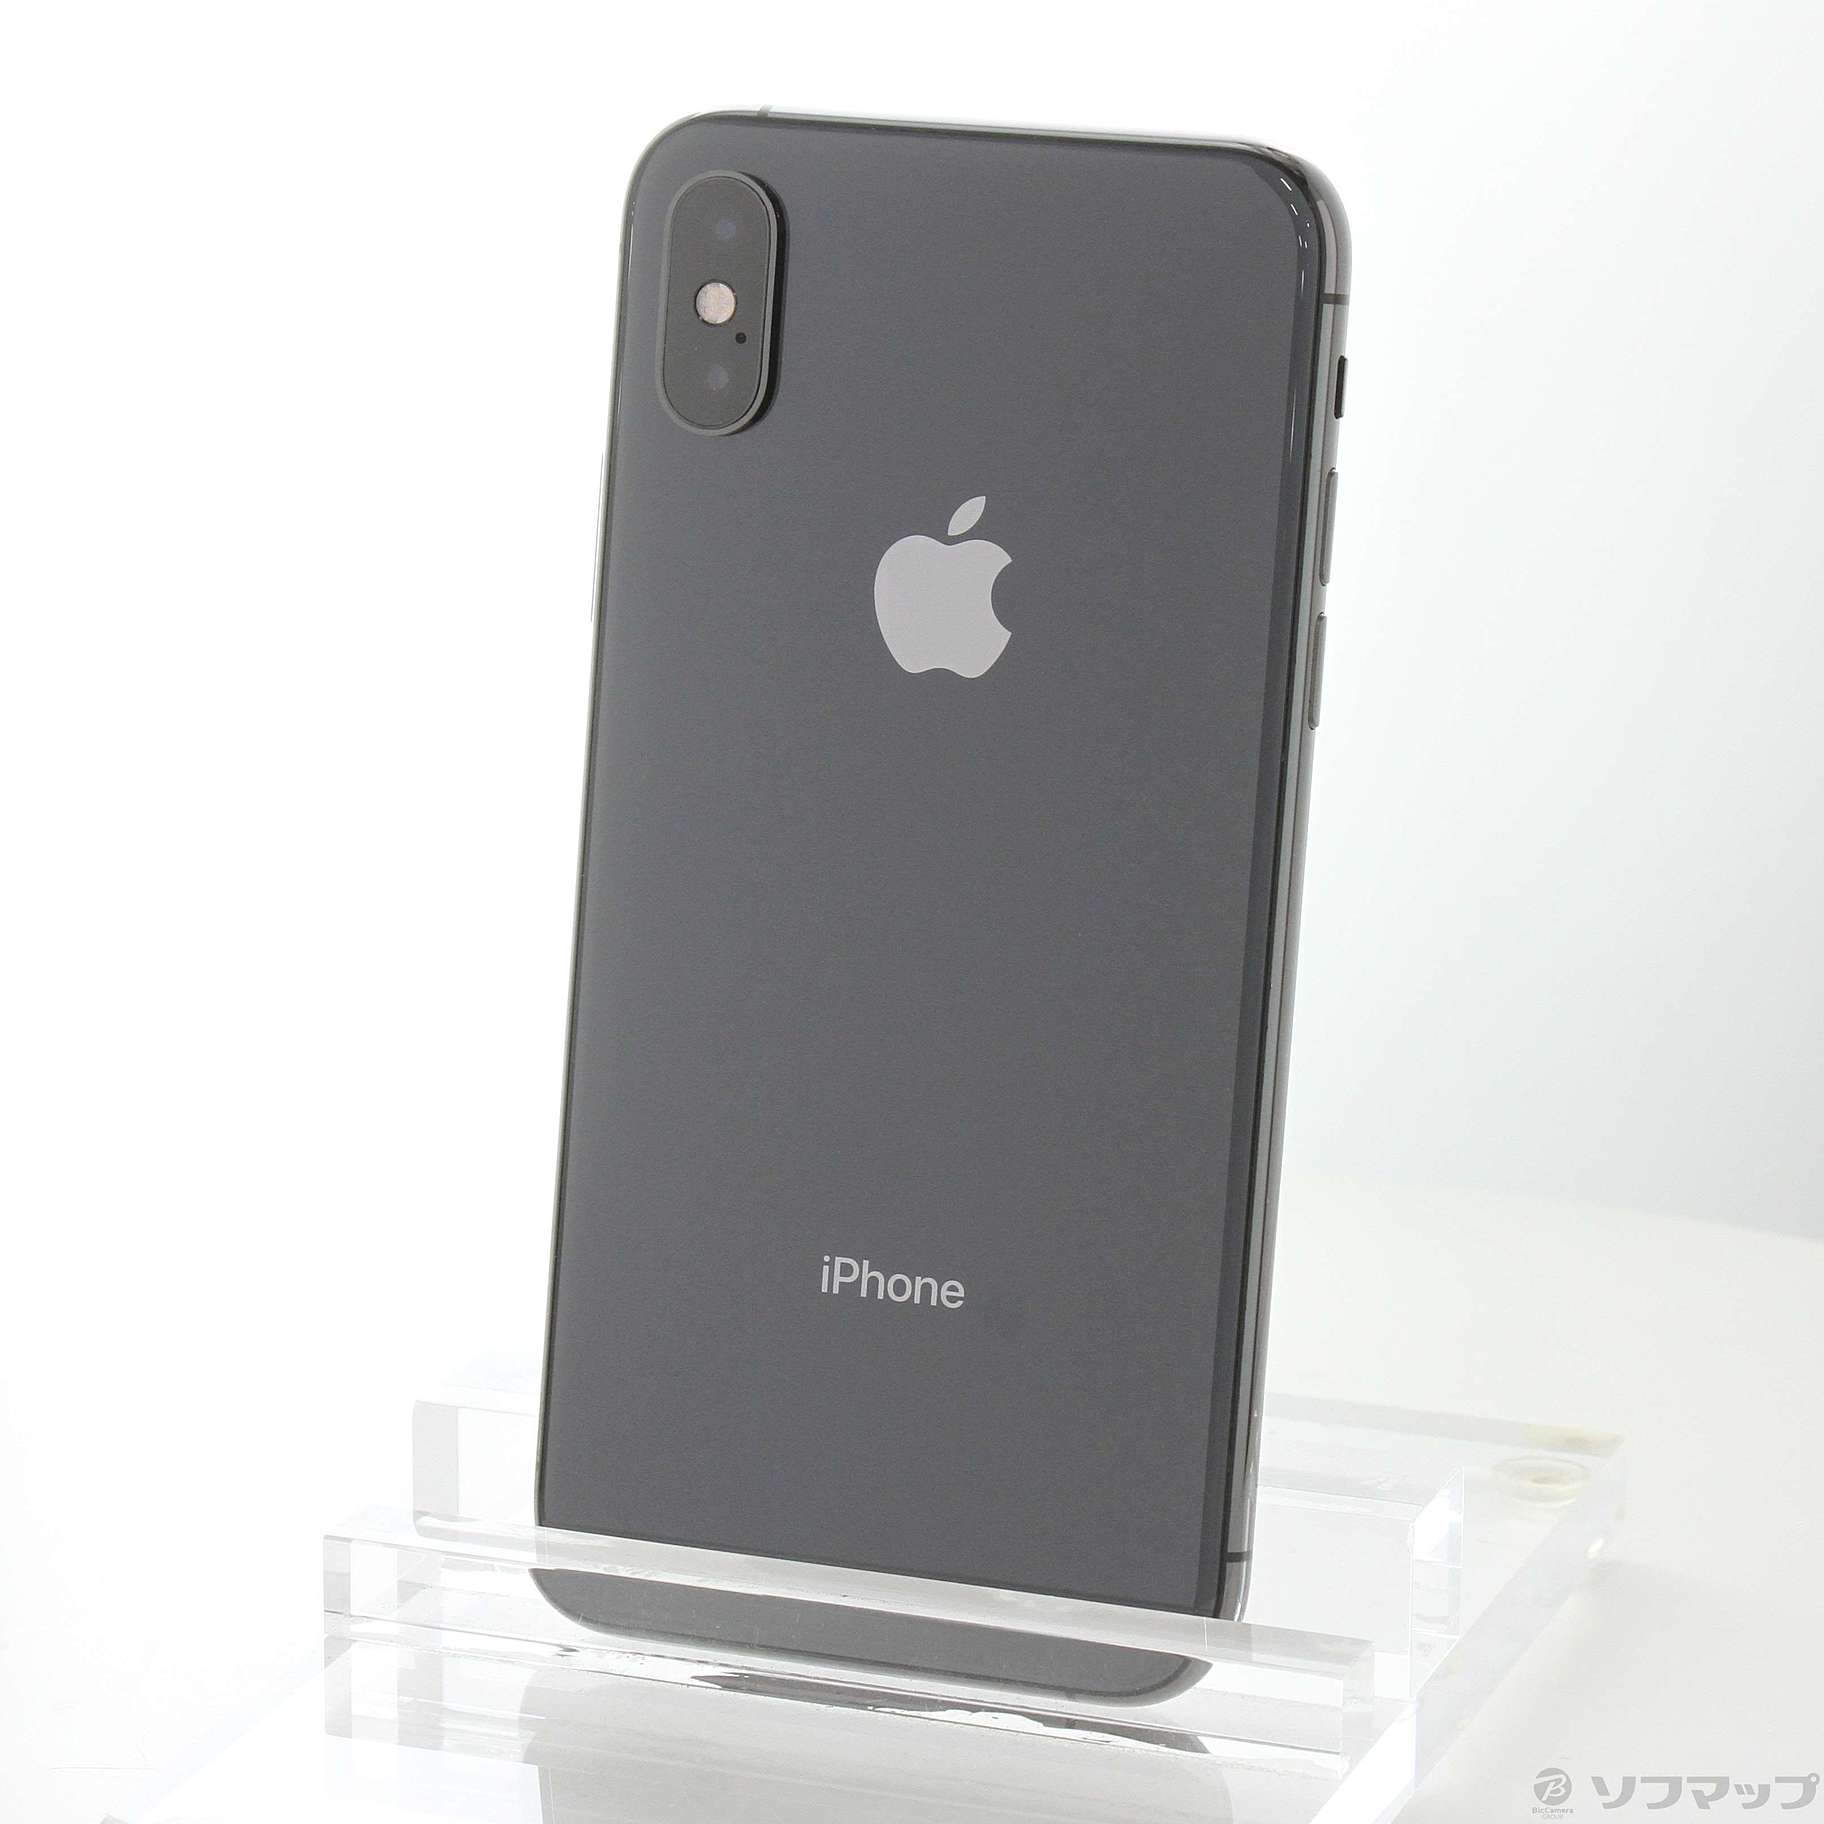 7,990円iPhone Xs スペースグレー 64GB